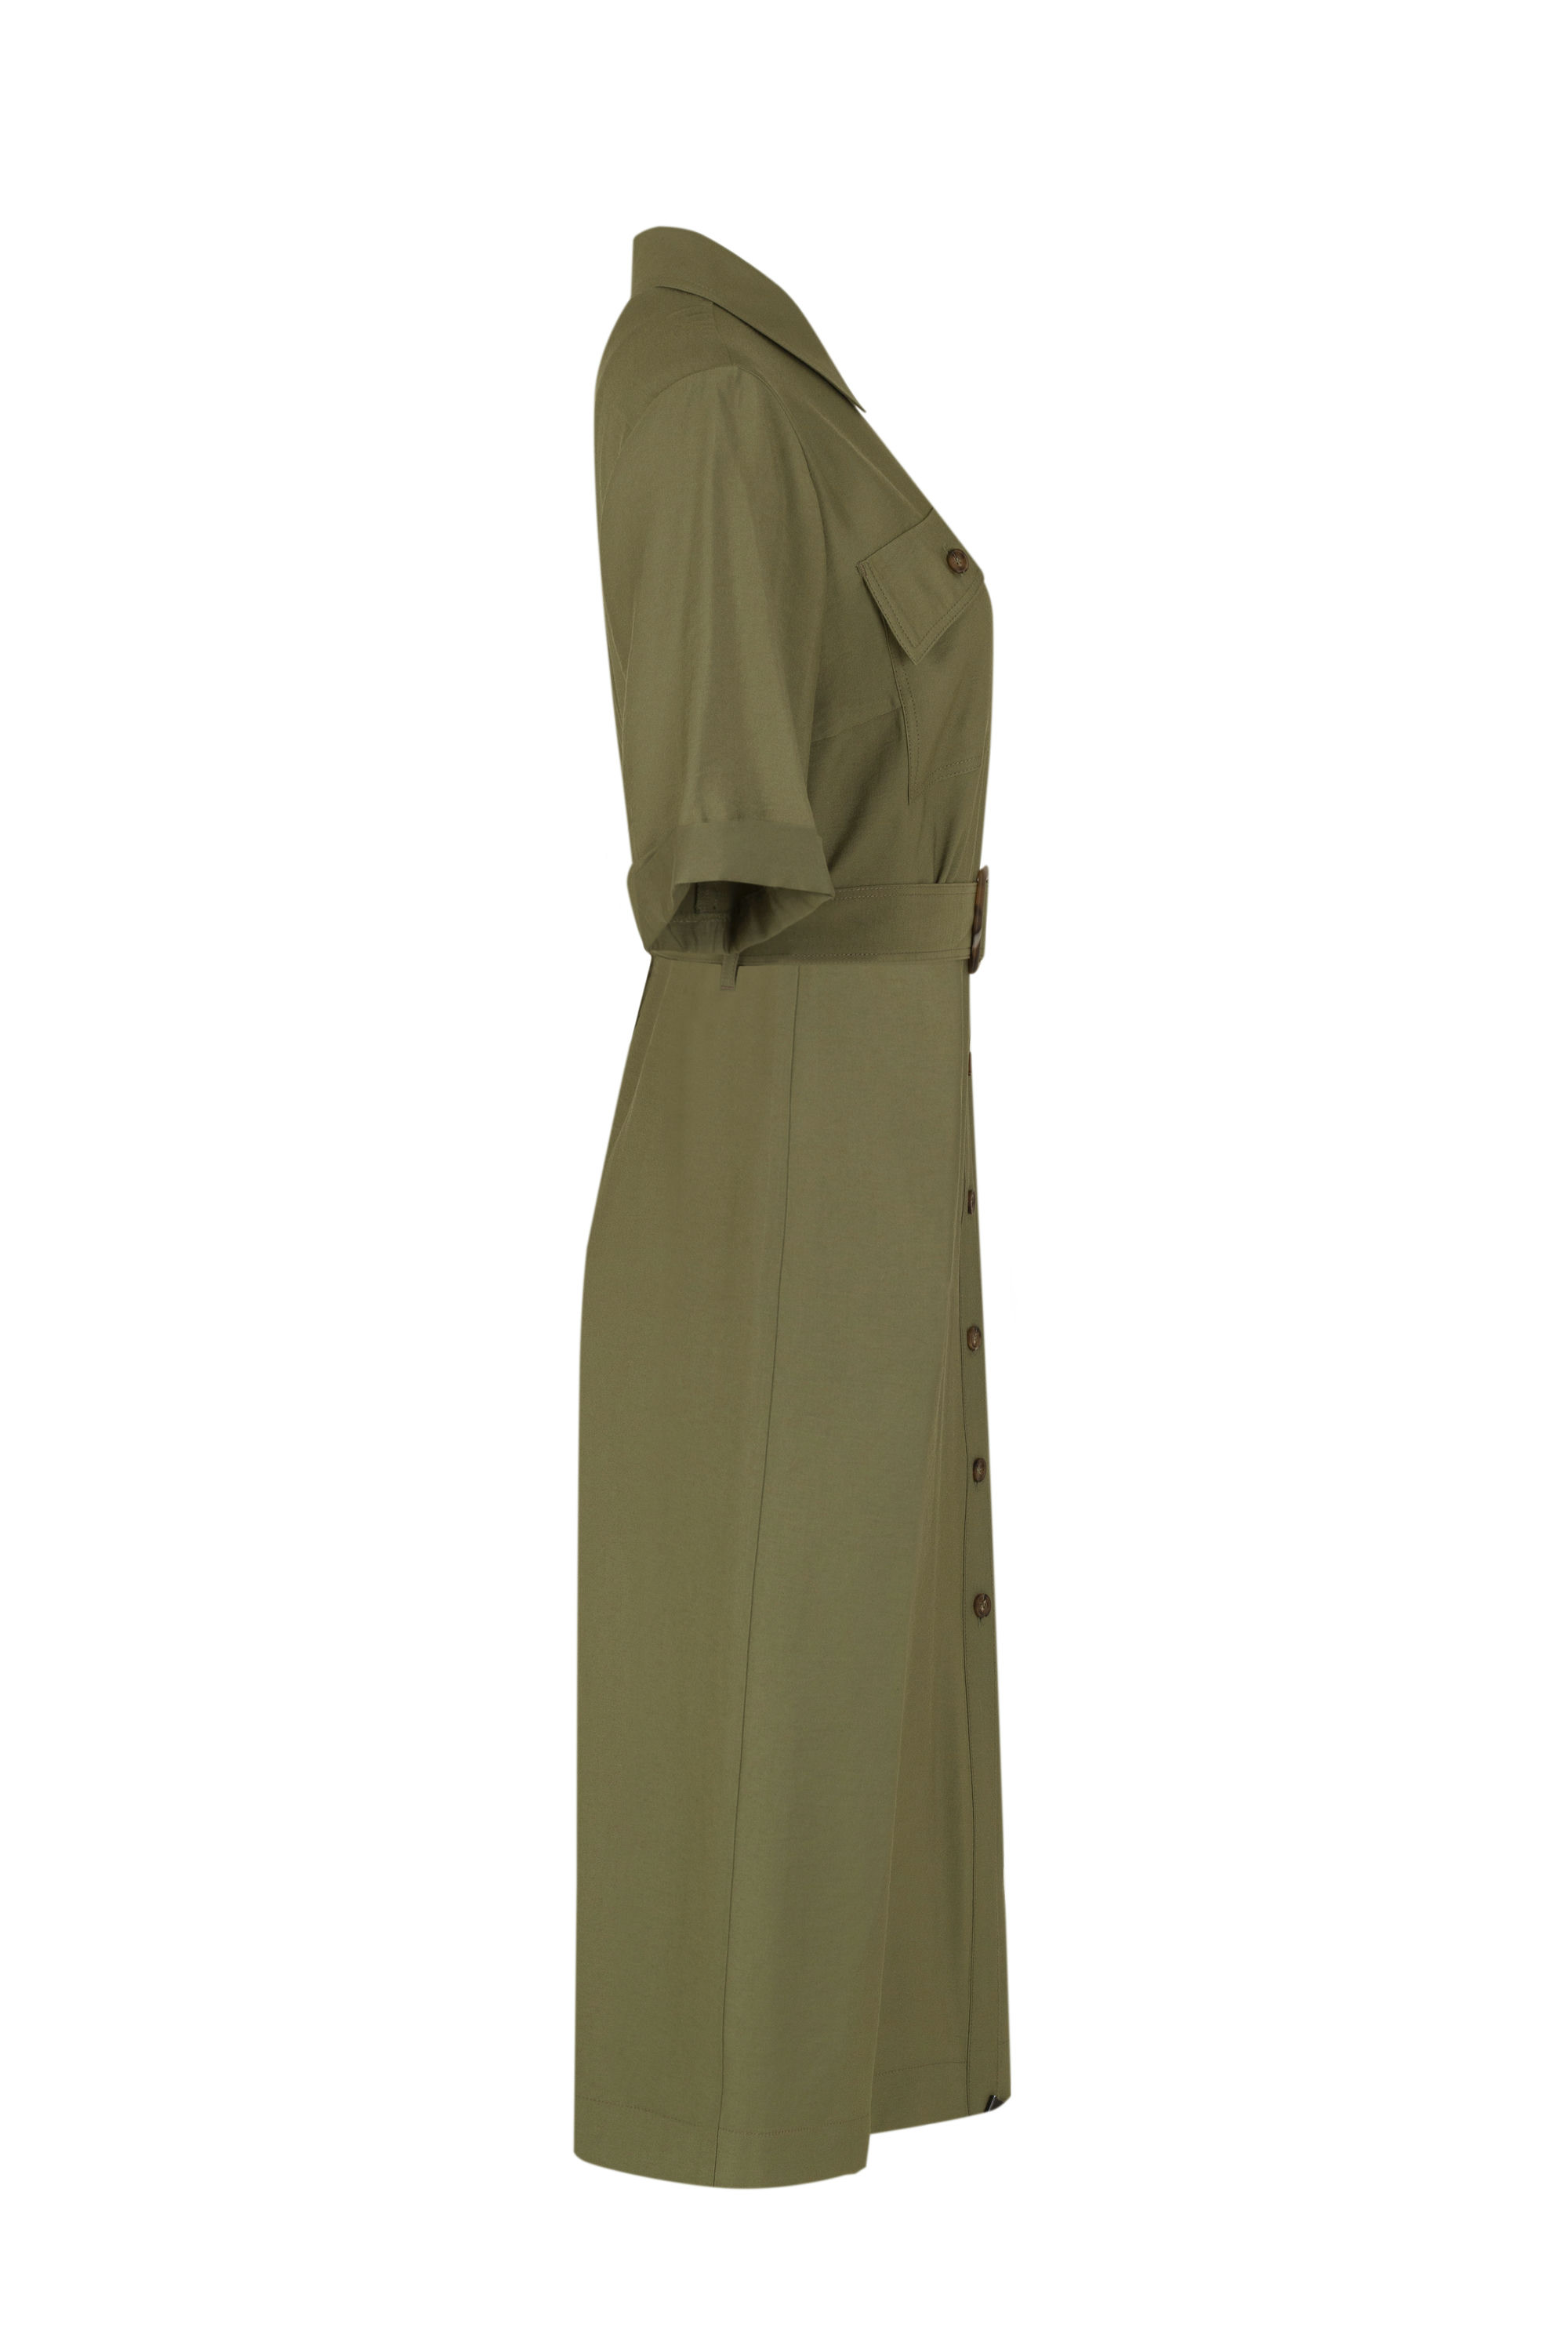 Платье женское 5К-12681-1. Фото 2.